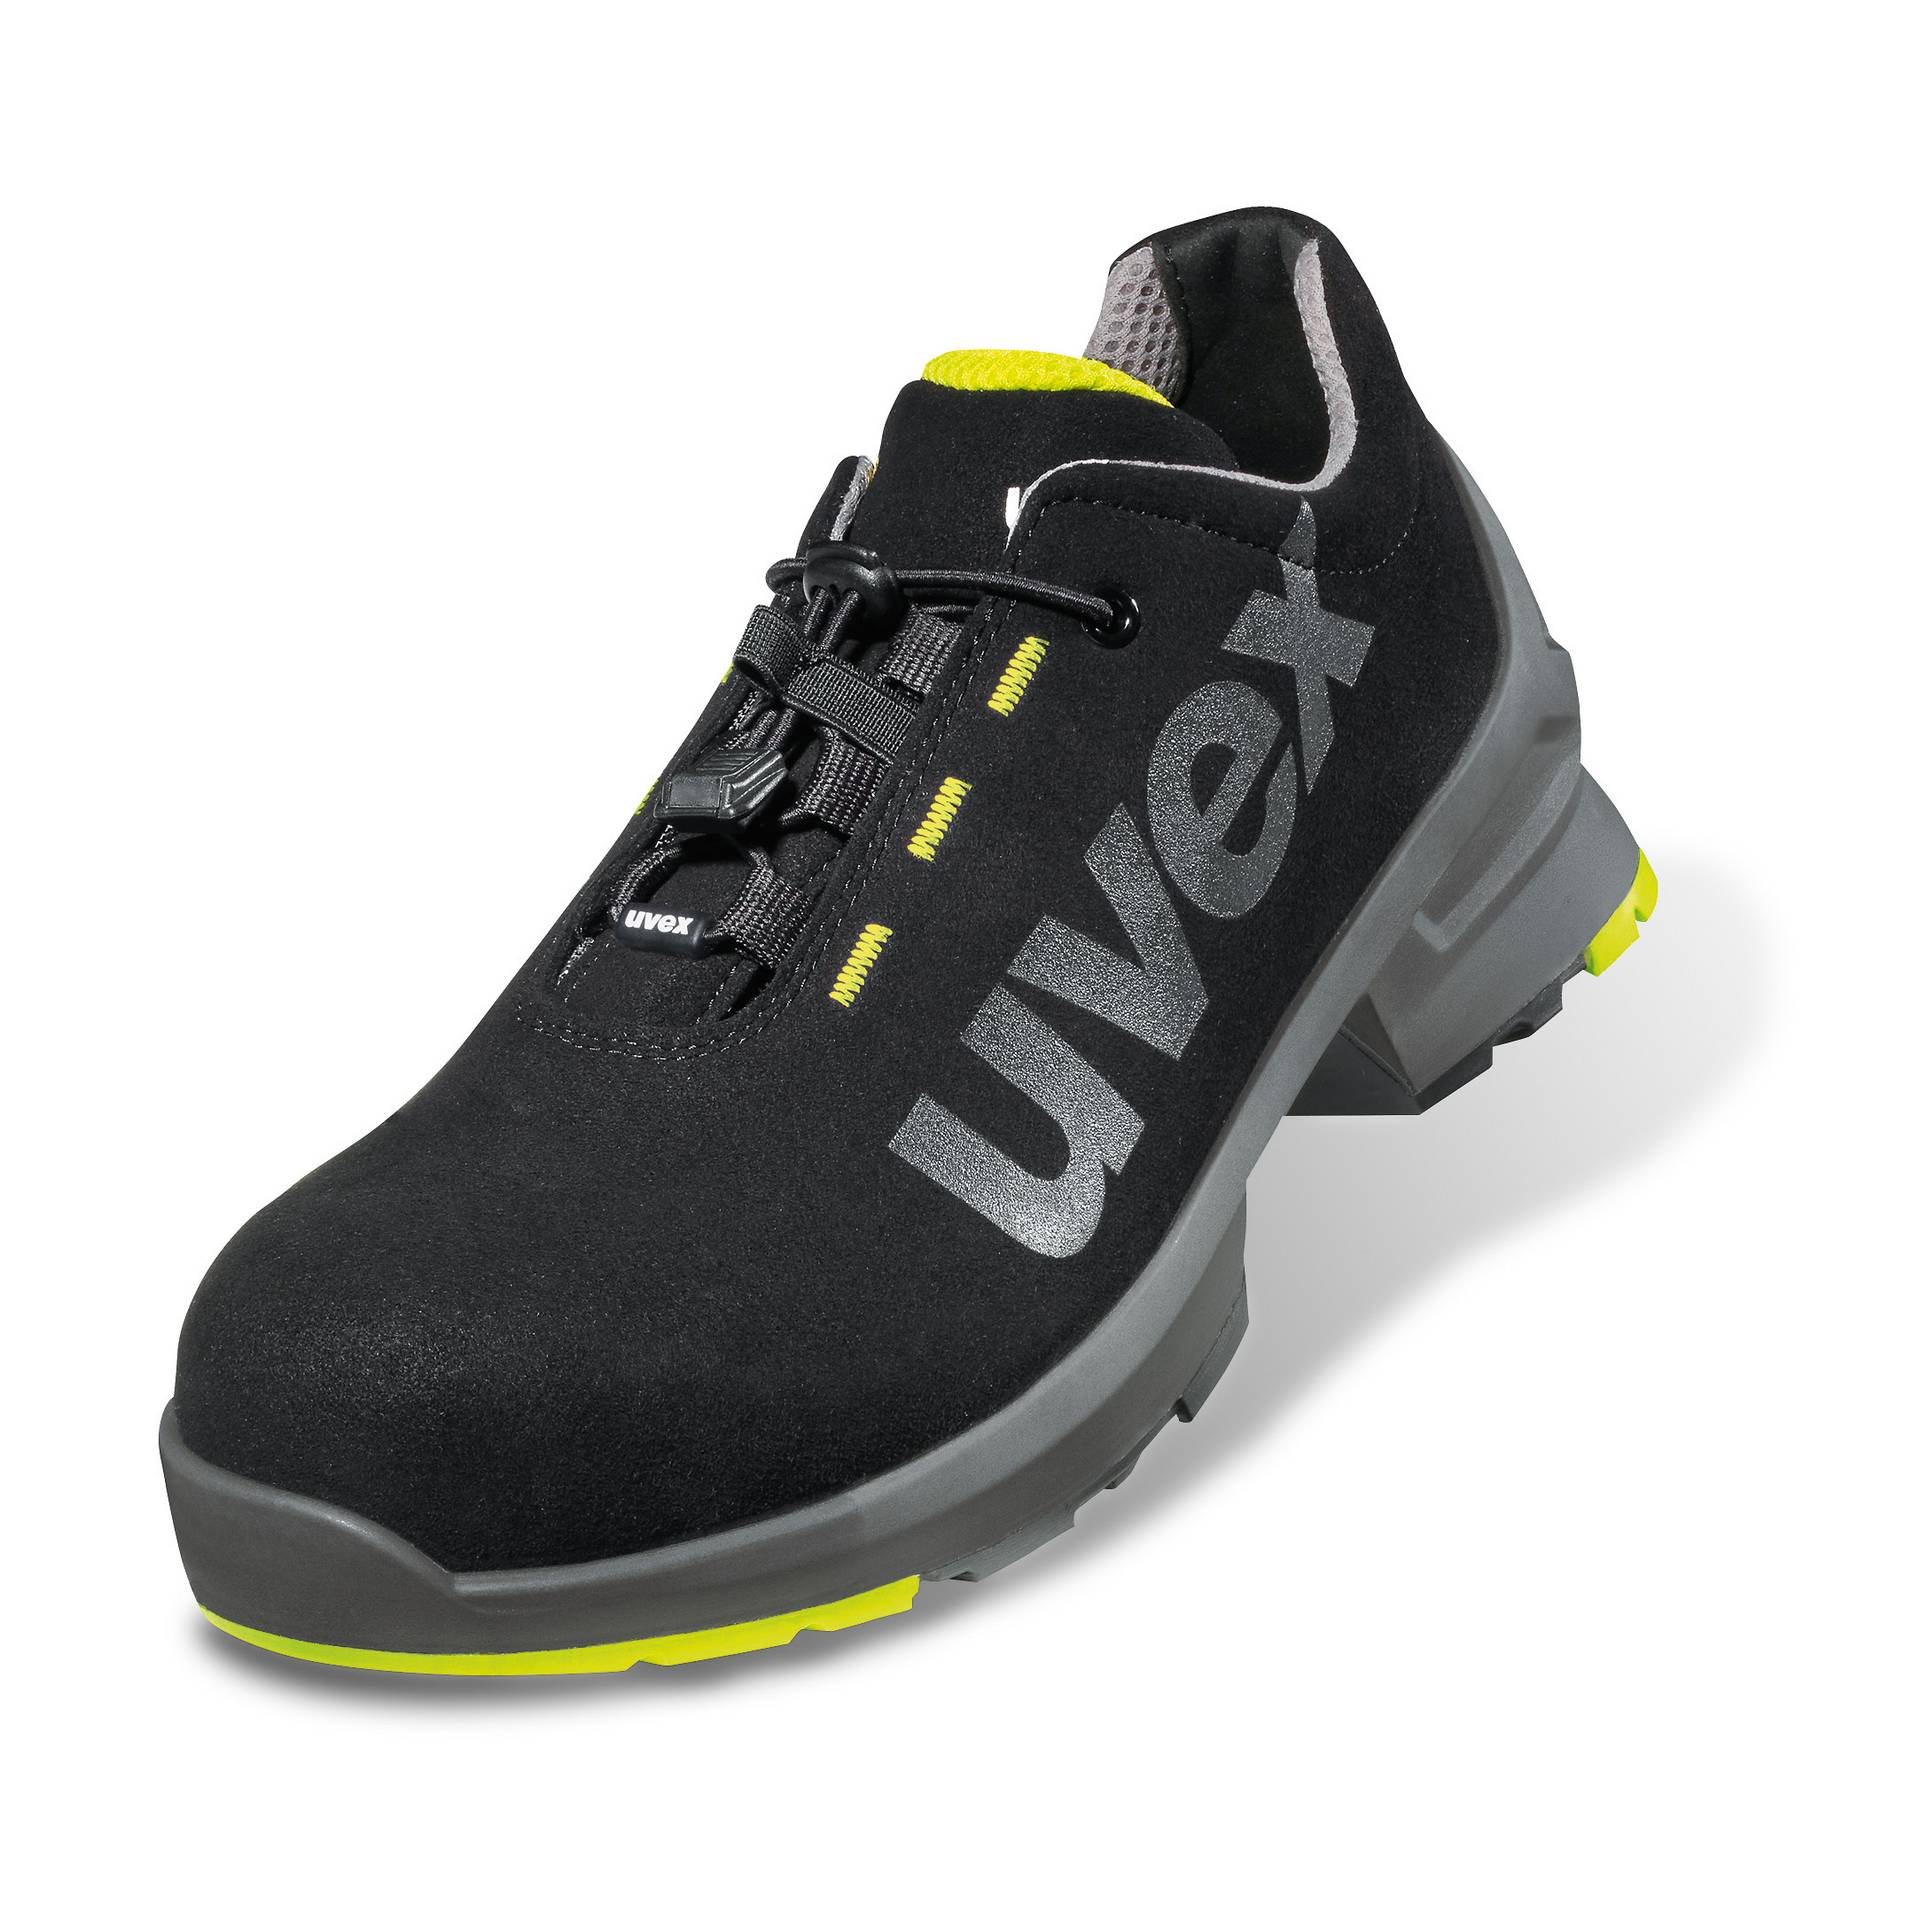 Uvex 1 Chaussures de sécurité S2 largeur 11